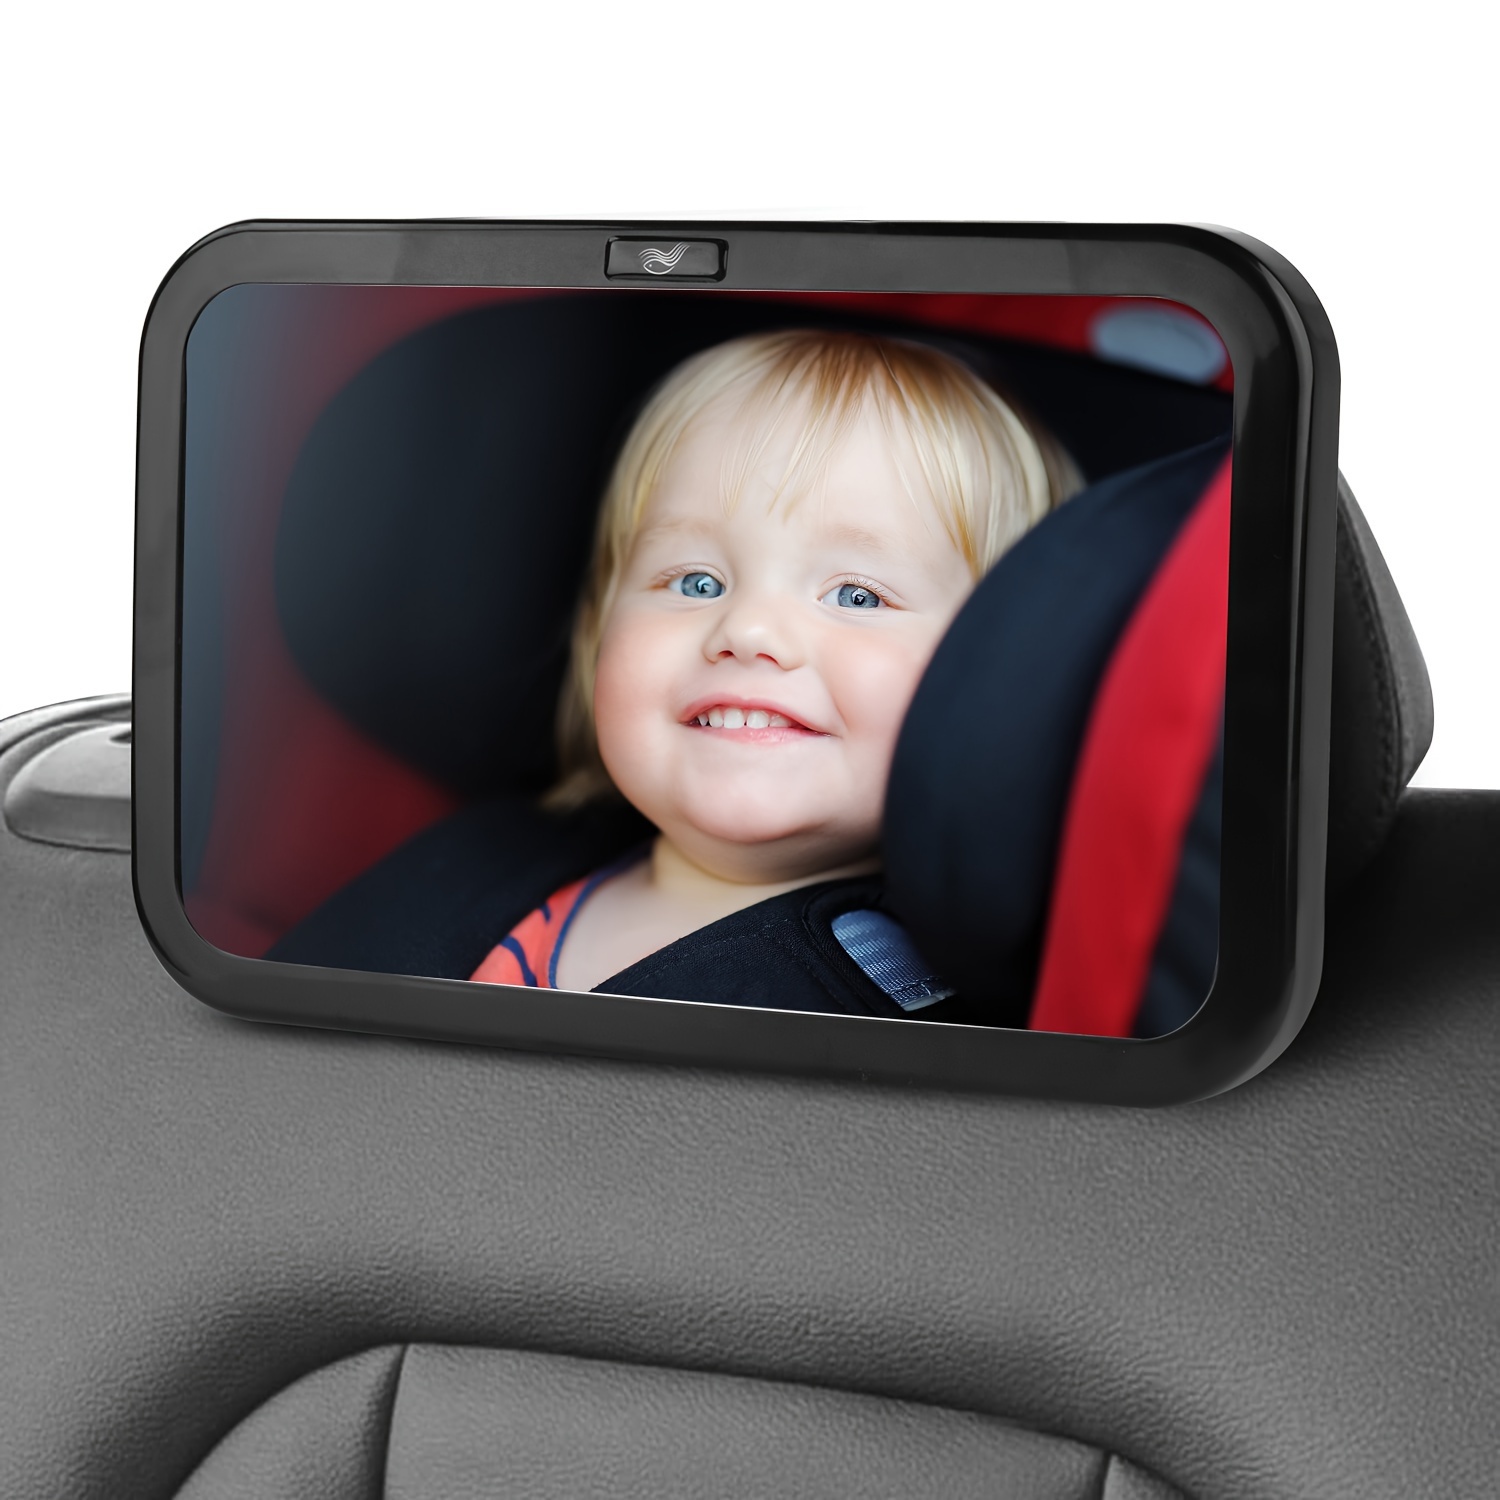 Baby-spiegel Mit 2 Haken, 1 Stück Warnaufkleber, Baby-rückspiegel Zur  Beobachtung Des Rücksitzes, Baby-auto-beobachtungsspiegel, Sicherheits- autospiegel, Sparen Sie Mehr Mit Ausverkaufsangeboten